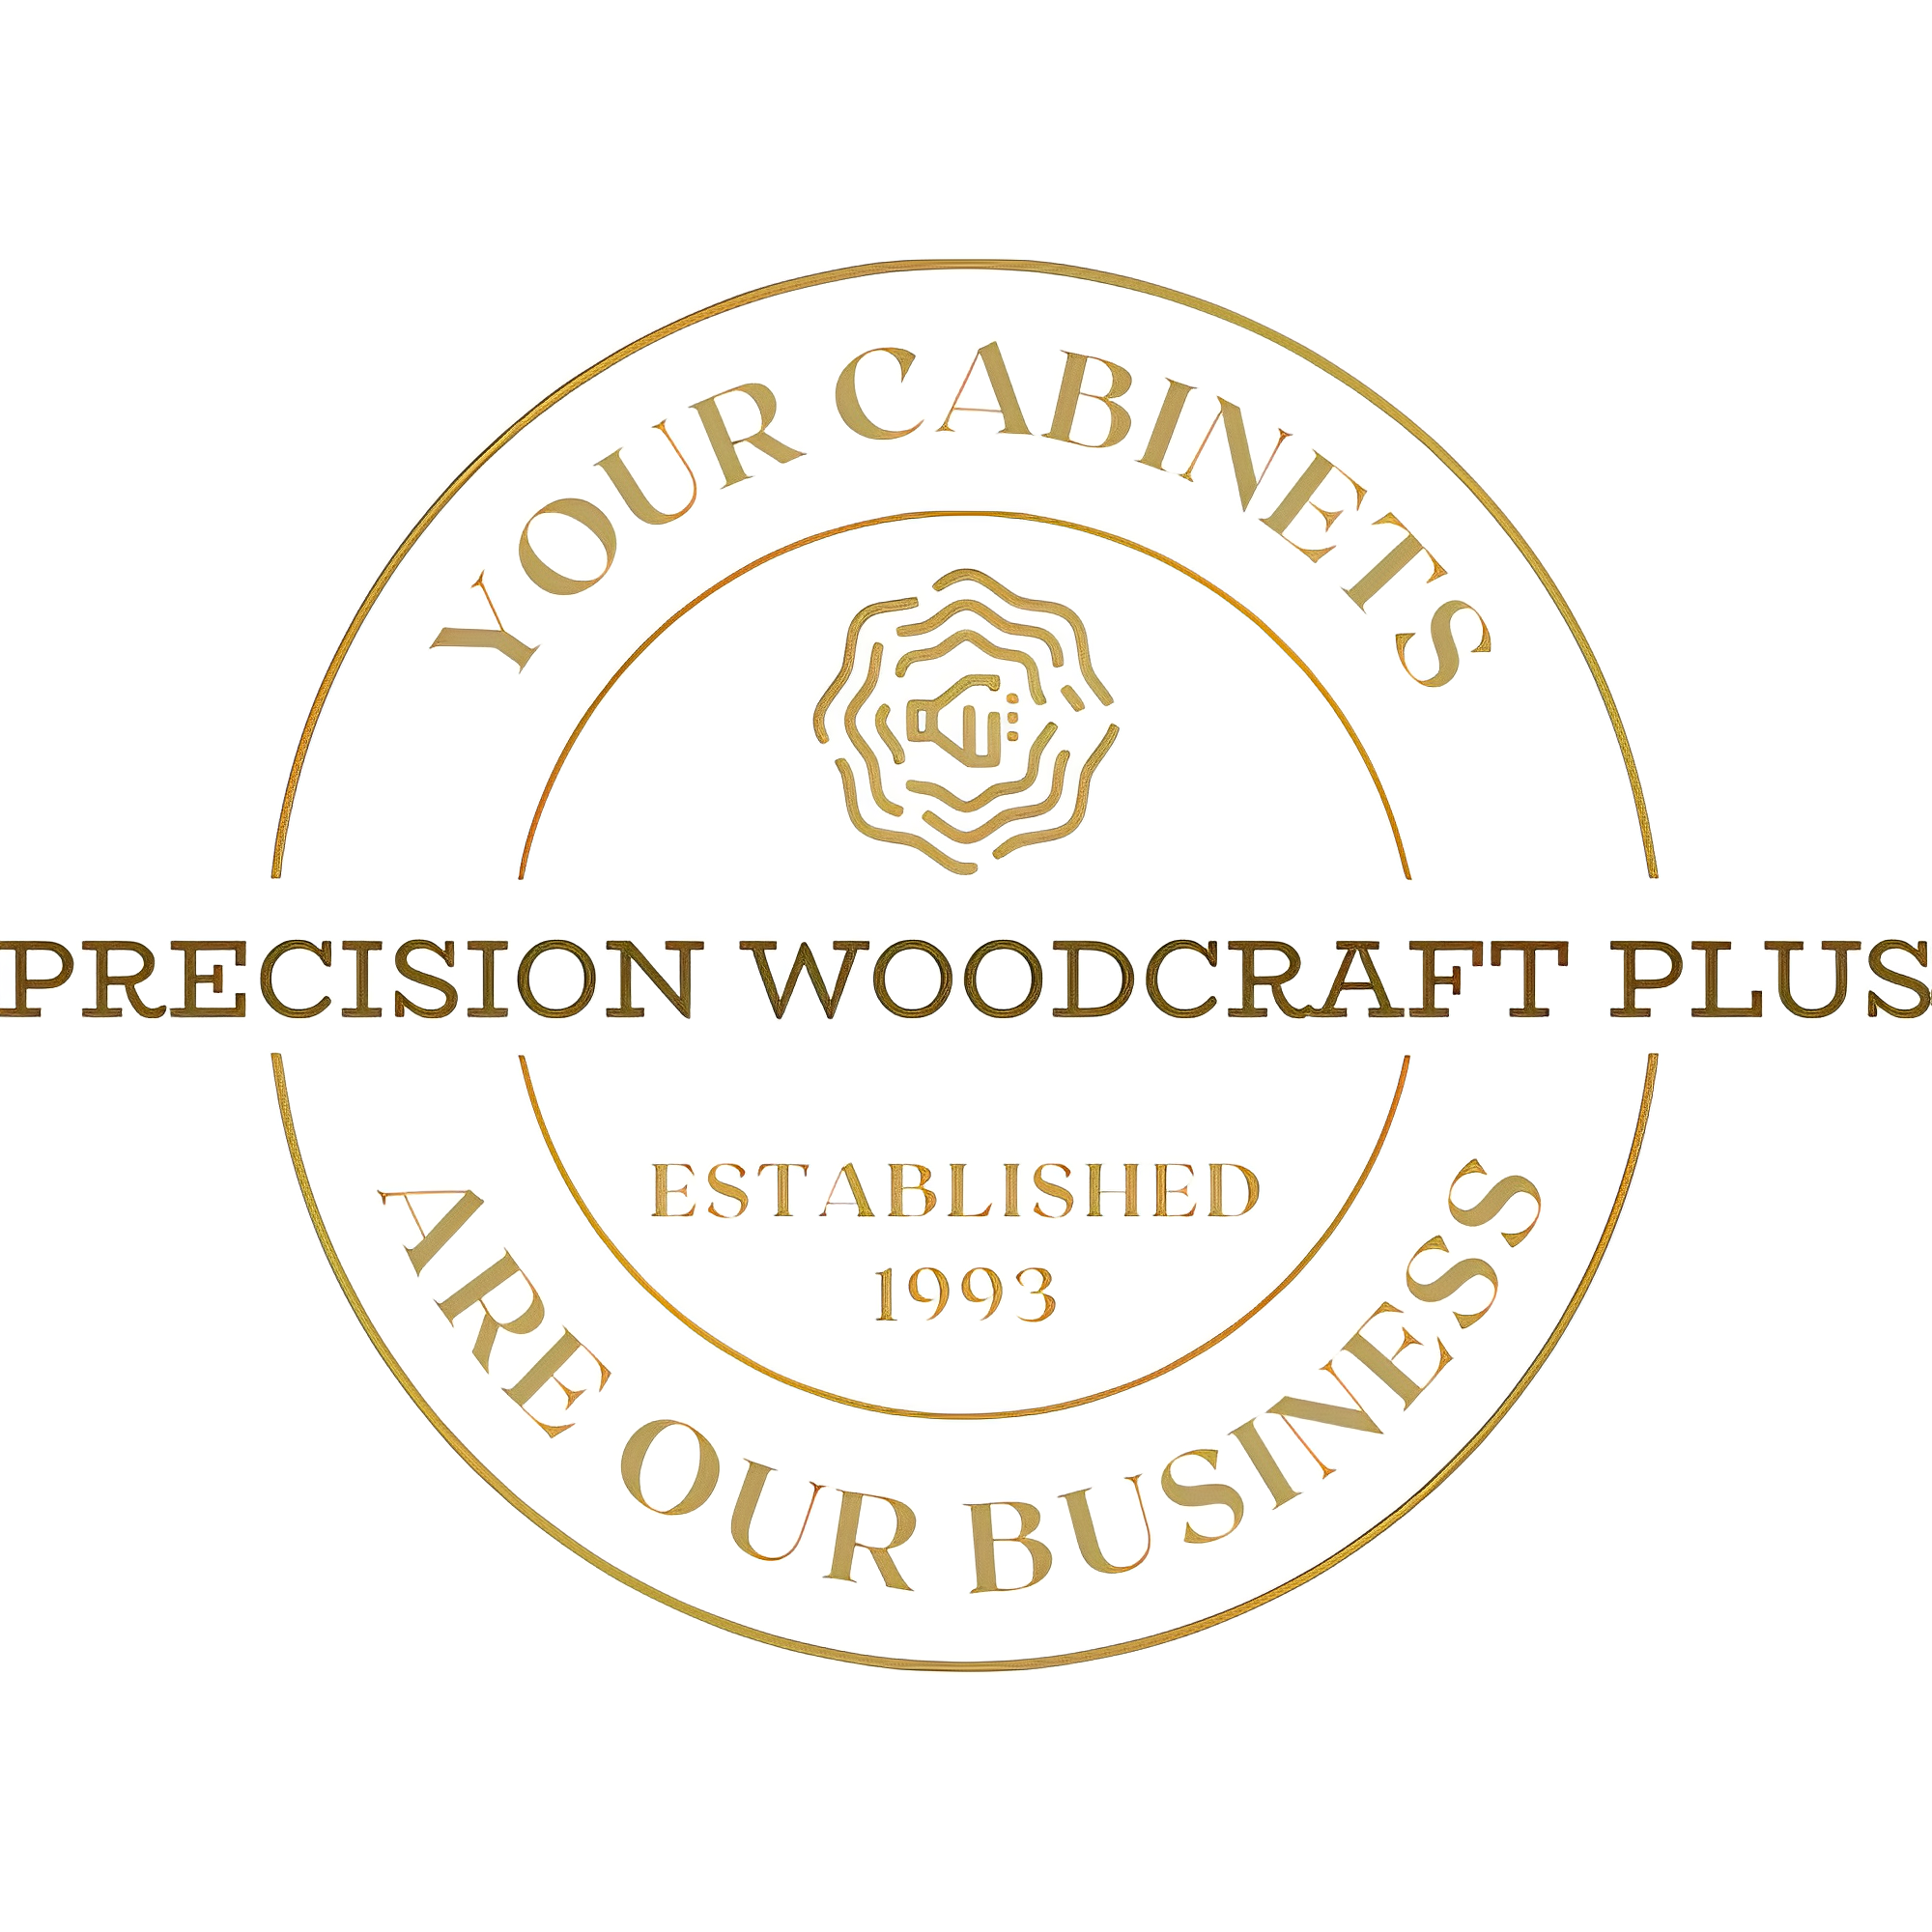 Custom Cabinetry & Furniture – PrecisionWoodcraftPlus